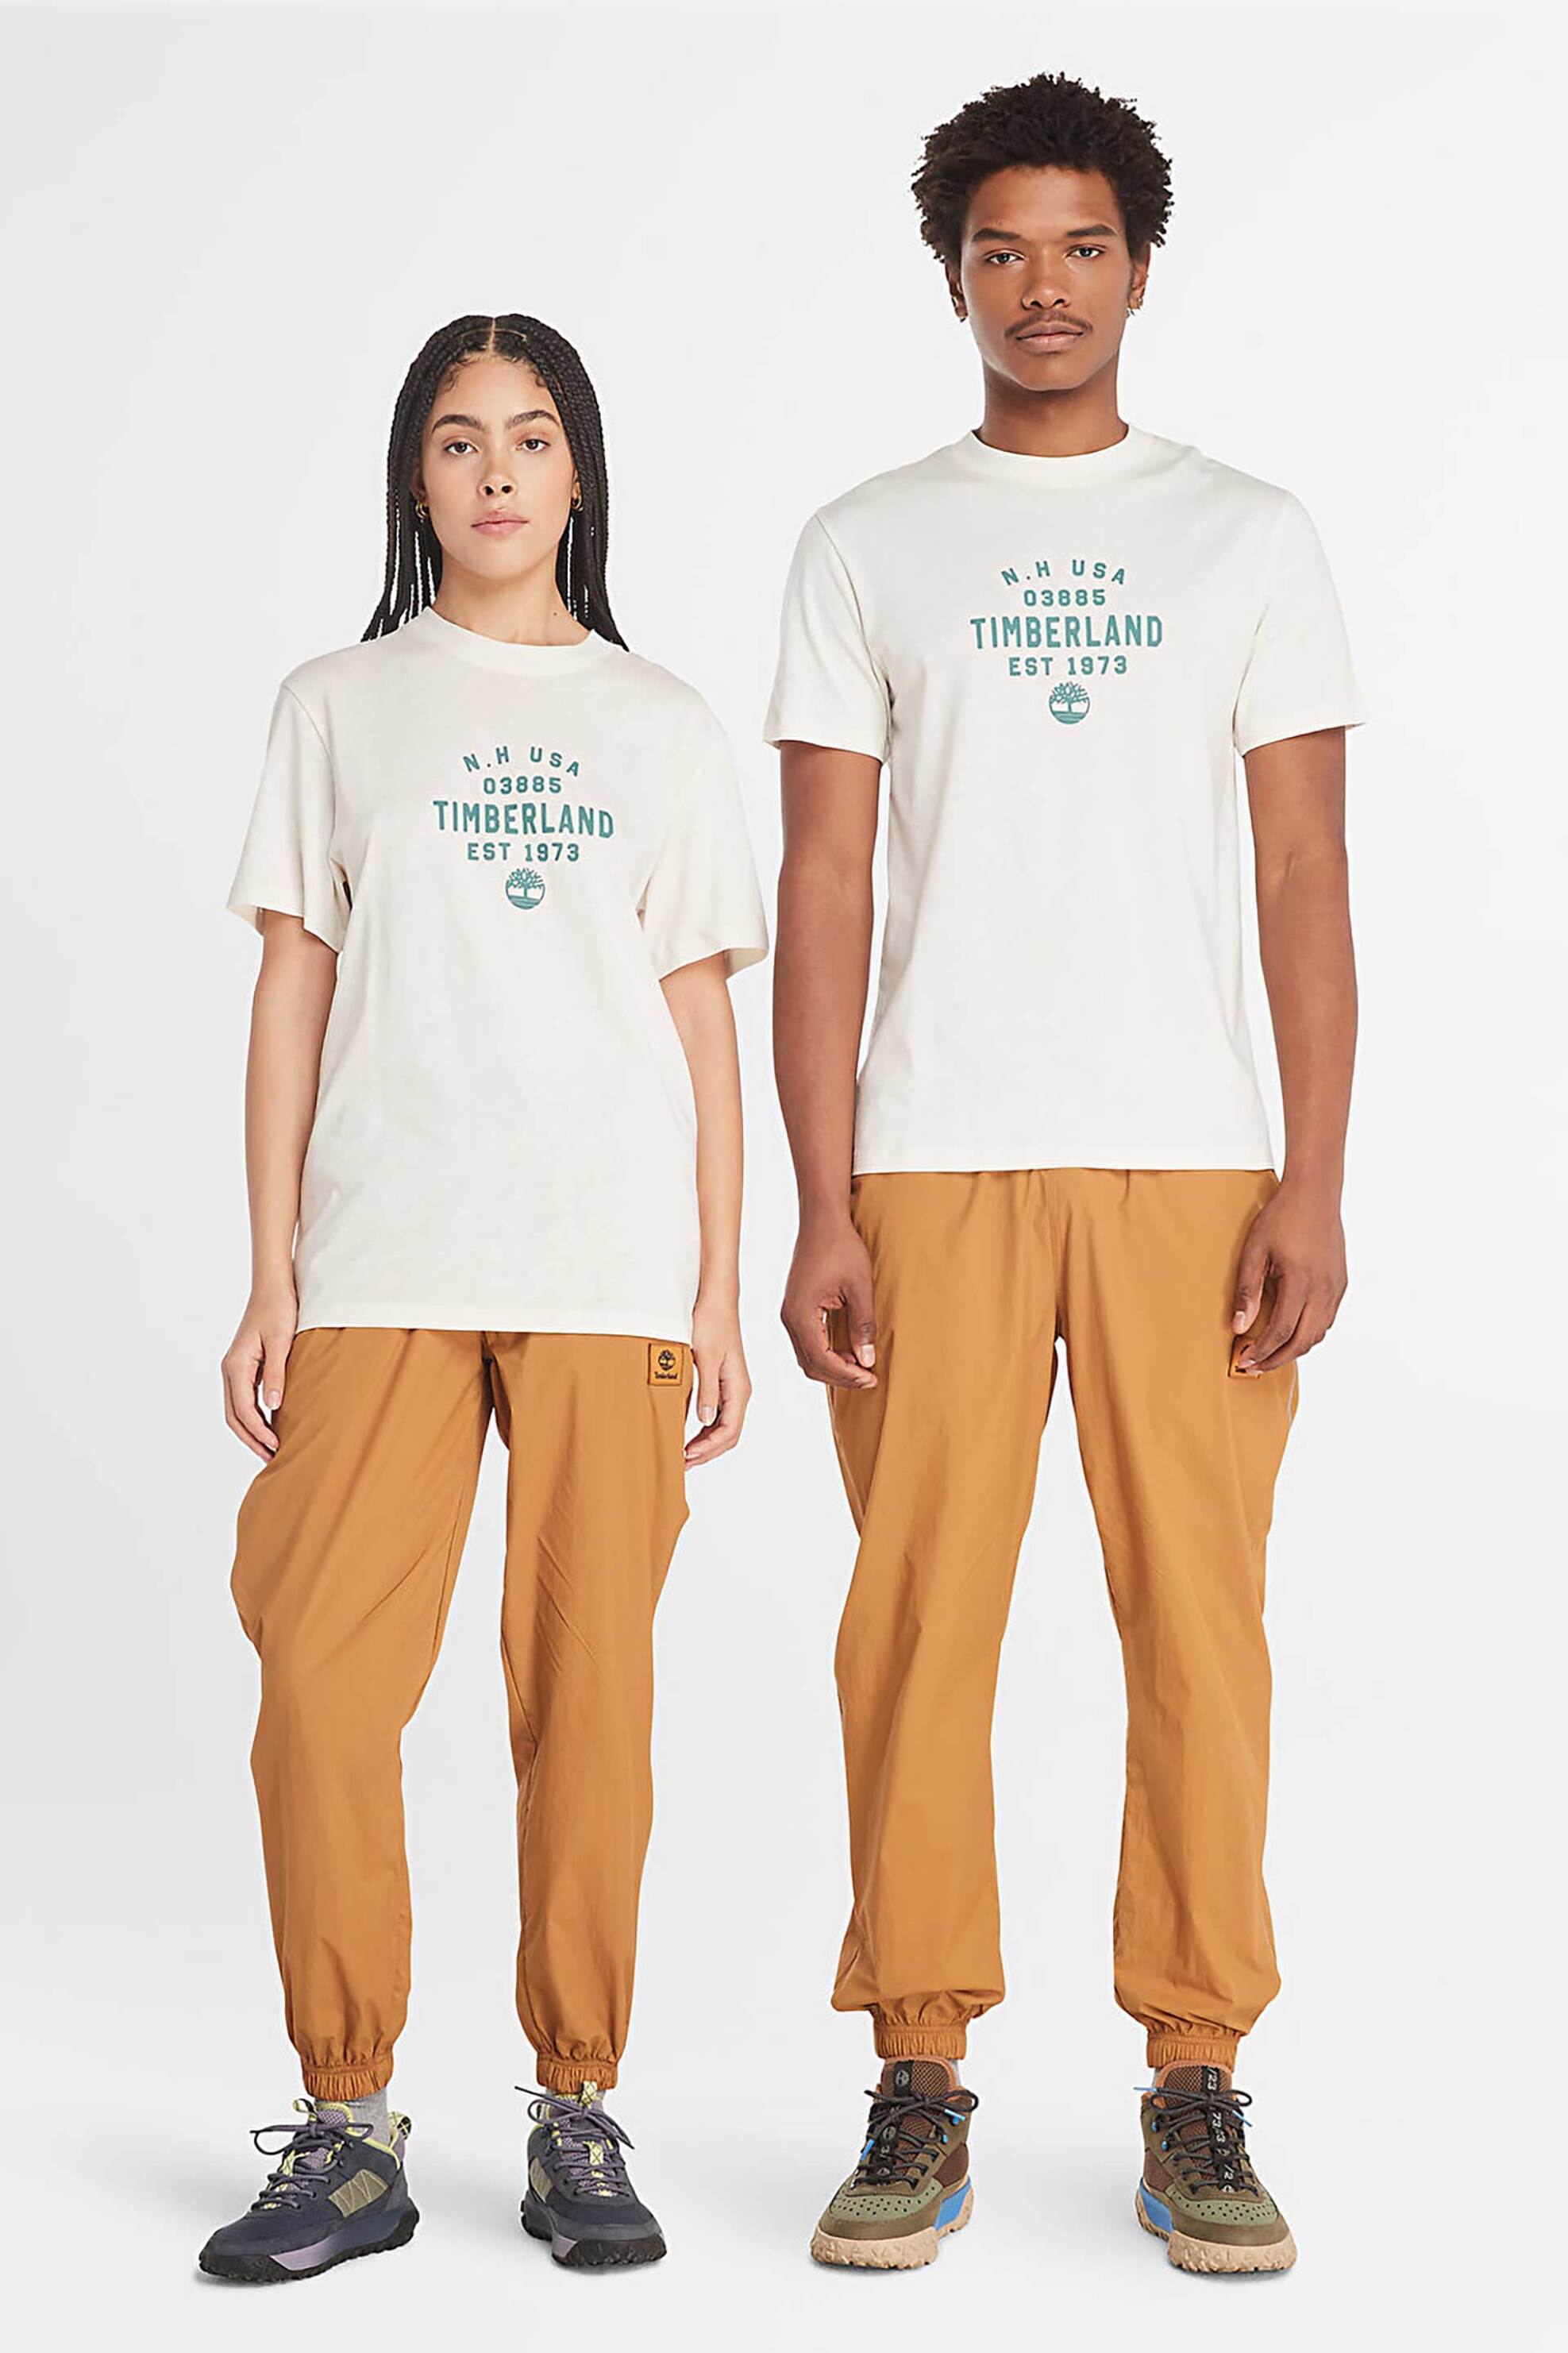 Ανδρική Μόδα > Ανδρικά Ρούχα > Ανδρικές Μπλούζες > Ανδρικά T-Shirts Timberland unisex T-shirt Regular Fit "Graphic Printed" - TB0A5UF7CM91 Λευκό